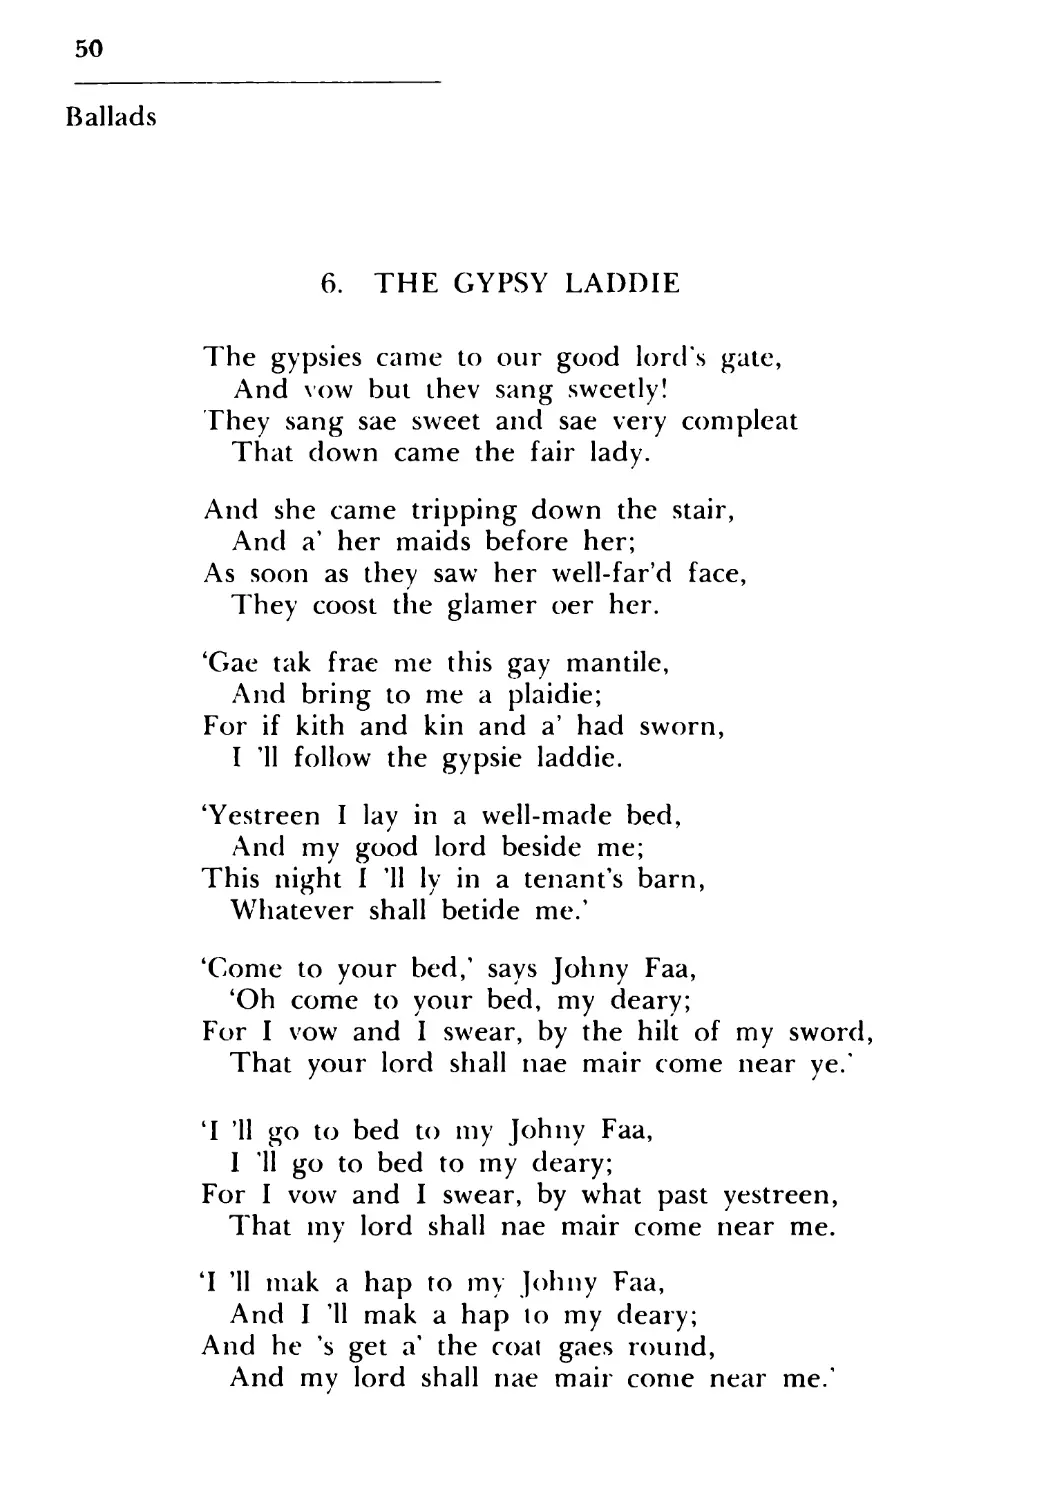 6. The Gypsy Laddie